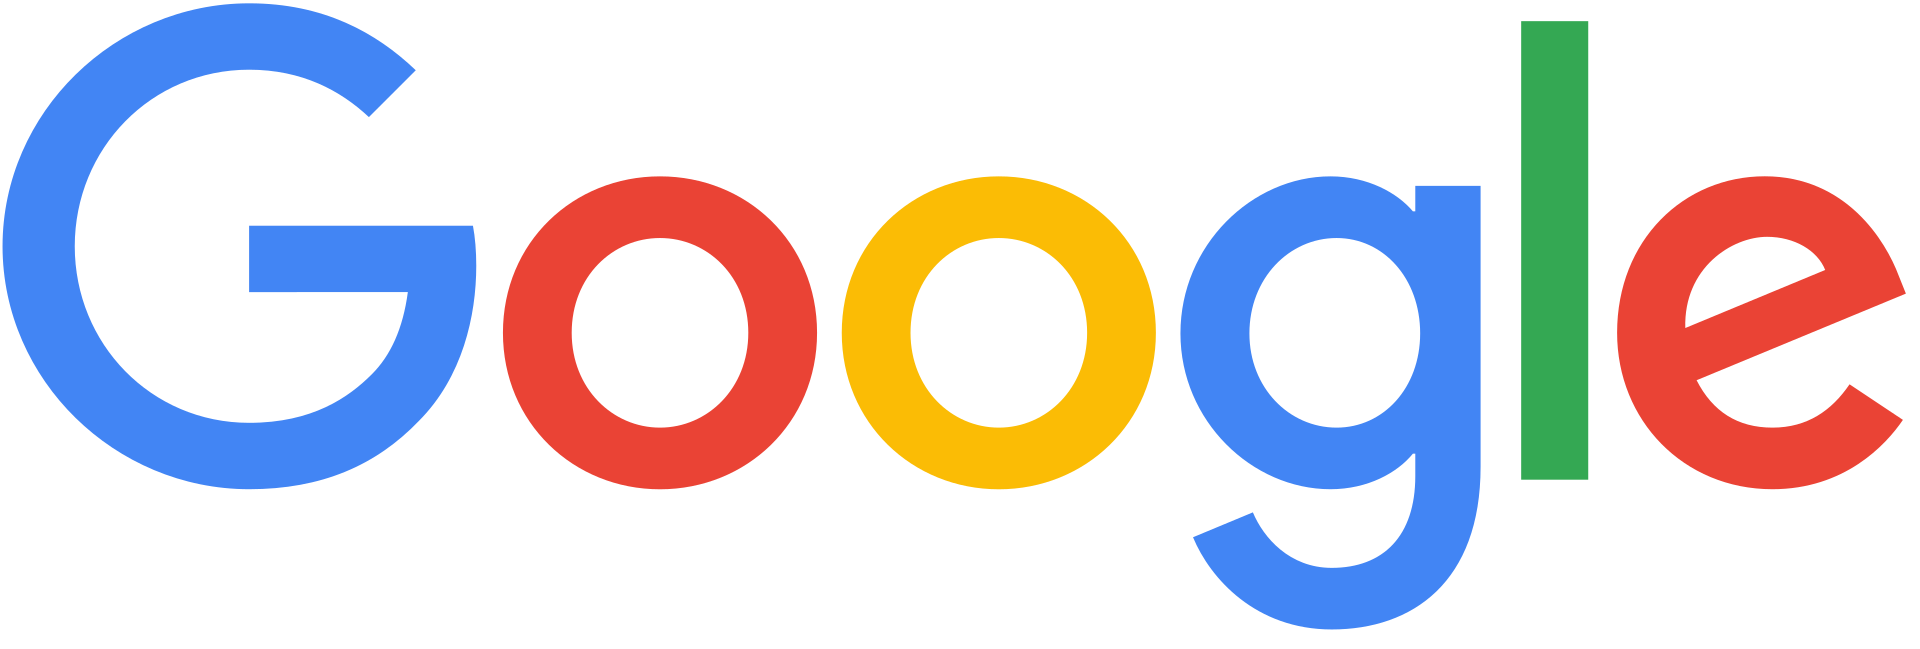 File:Google logo.png